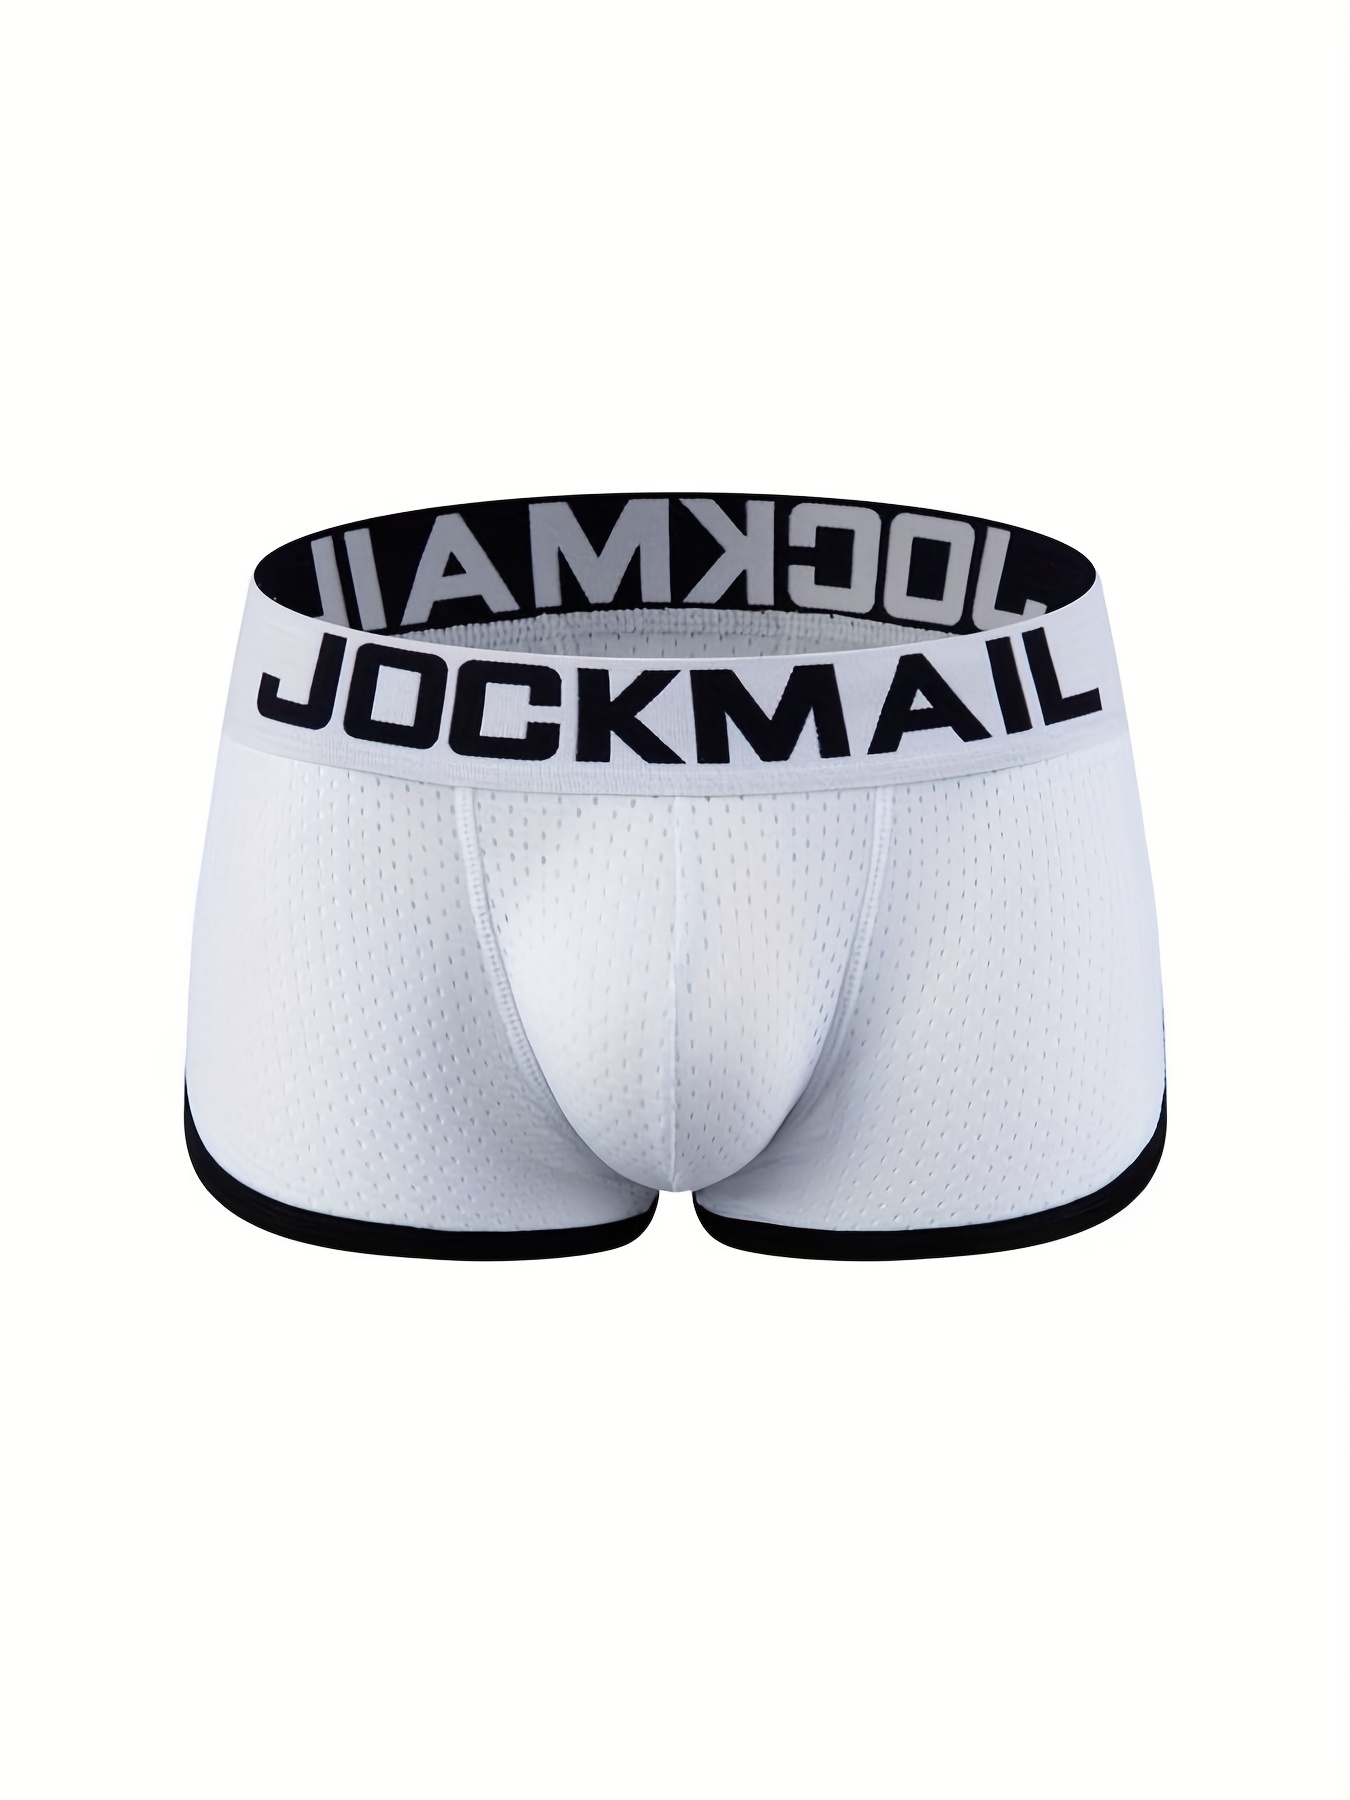 Jockey Underwear For Menl - Buy Jockey Underwear For Menl online